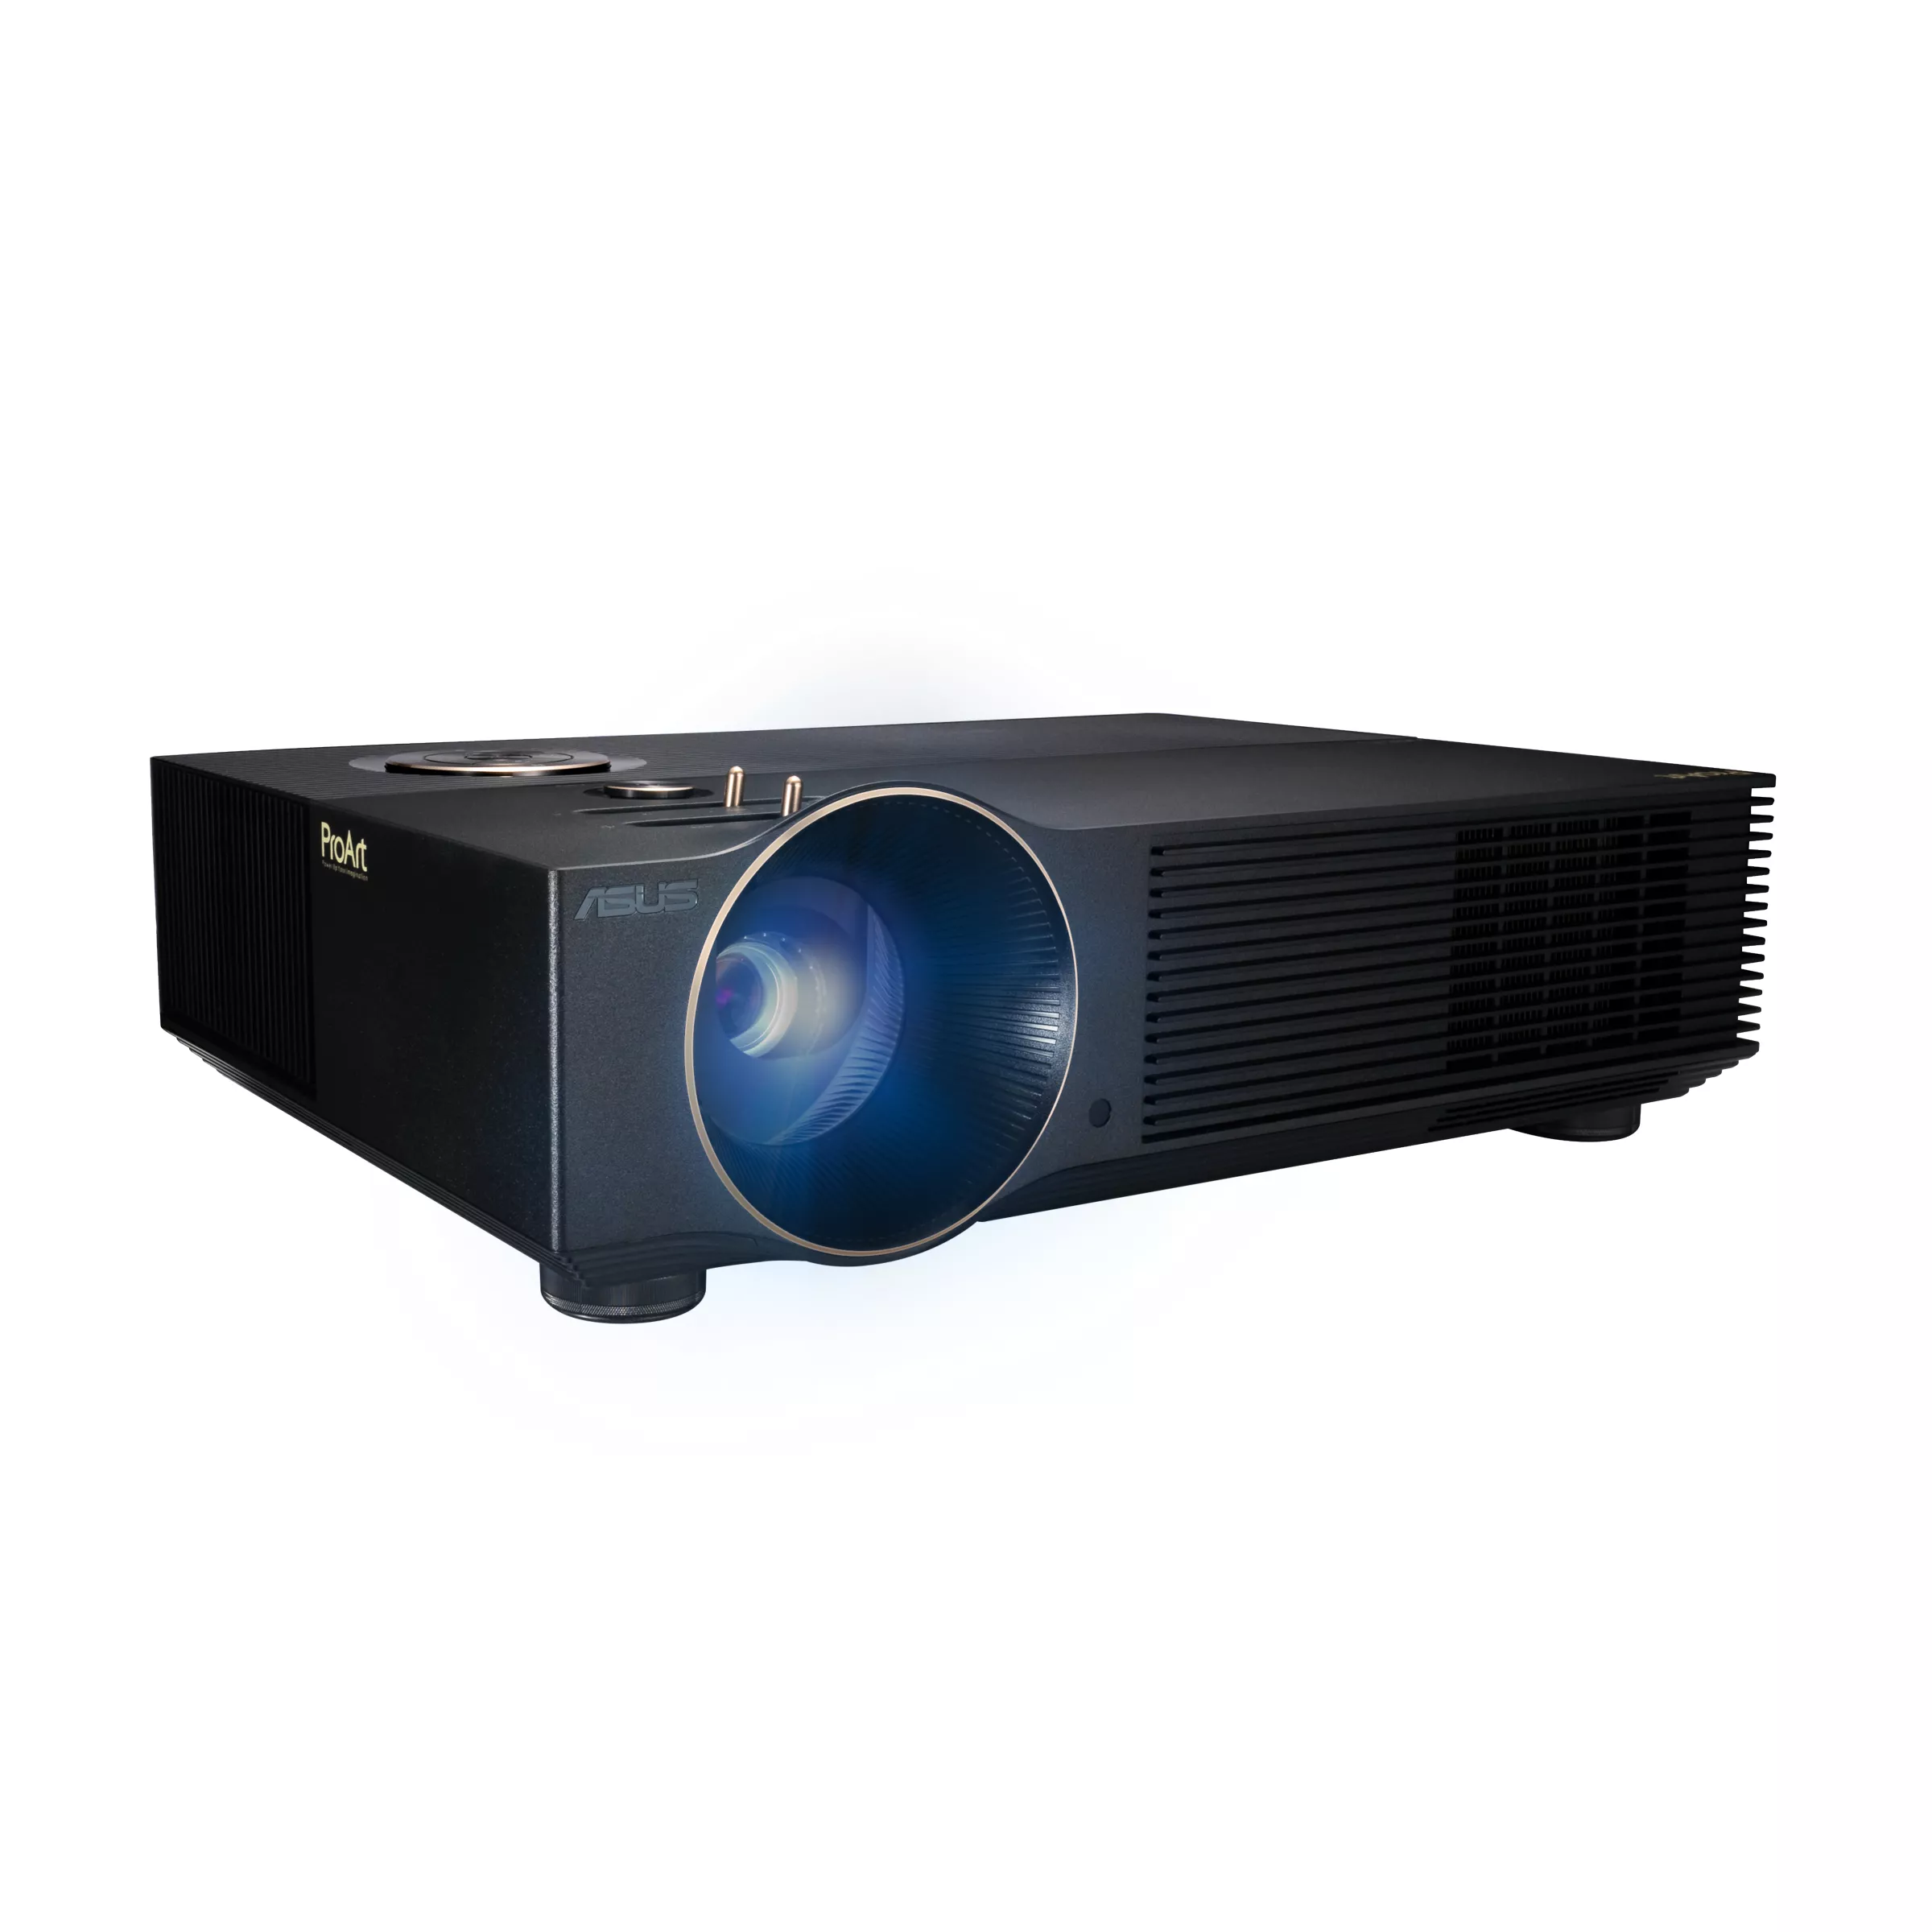 Vente ASUS ProArt A1 LED FHD 3000 lumens professional ASUS au meilleur prix - visuel 2